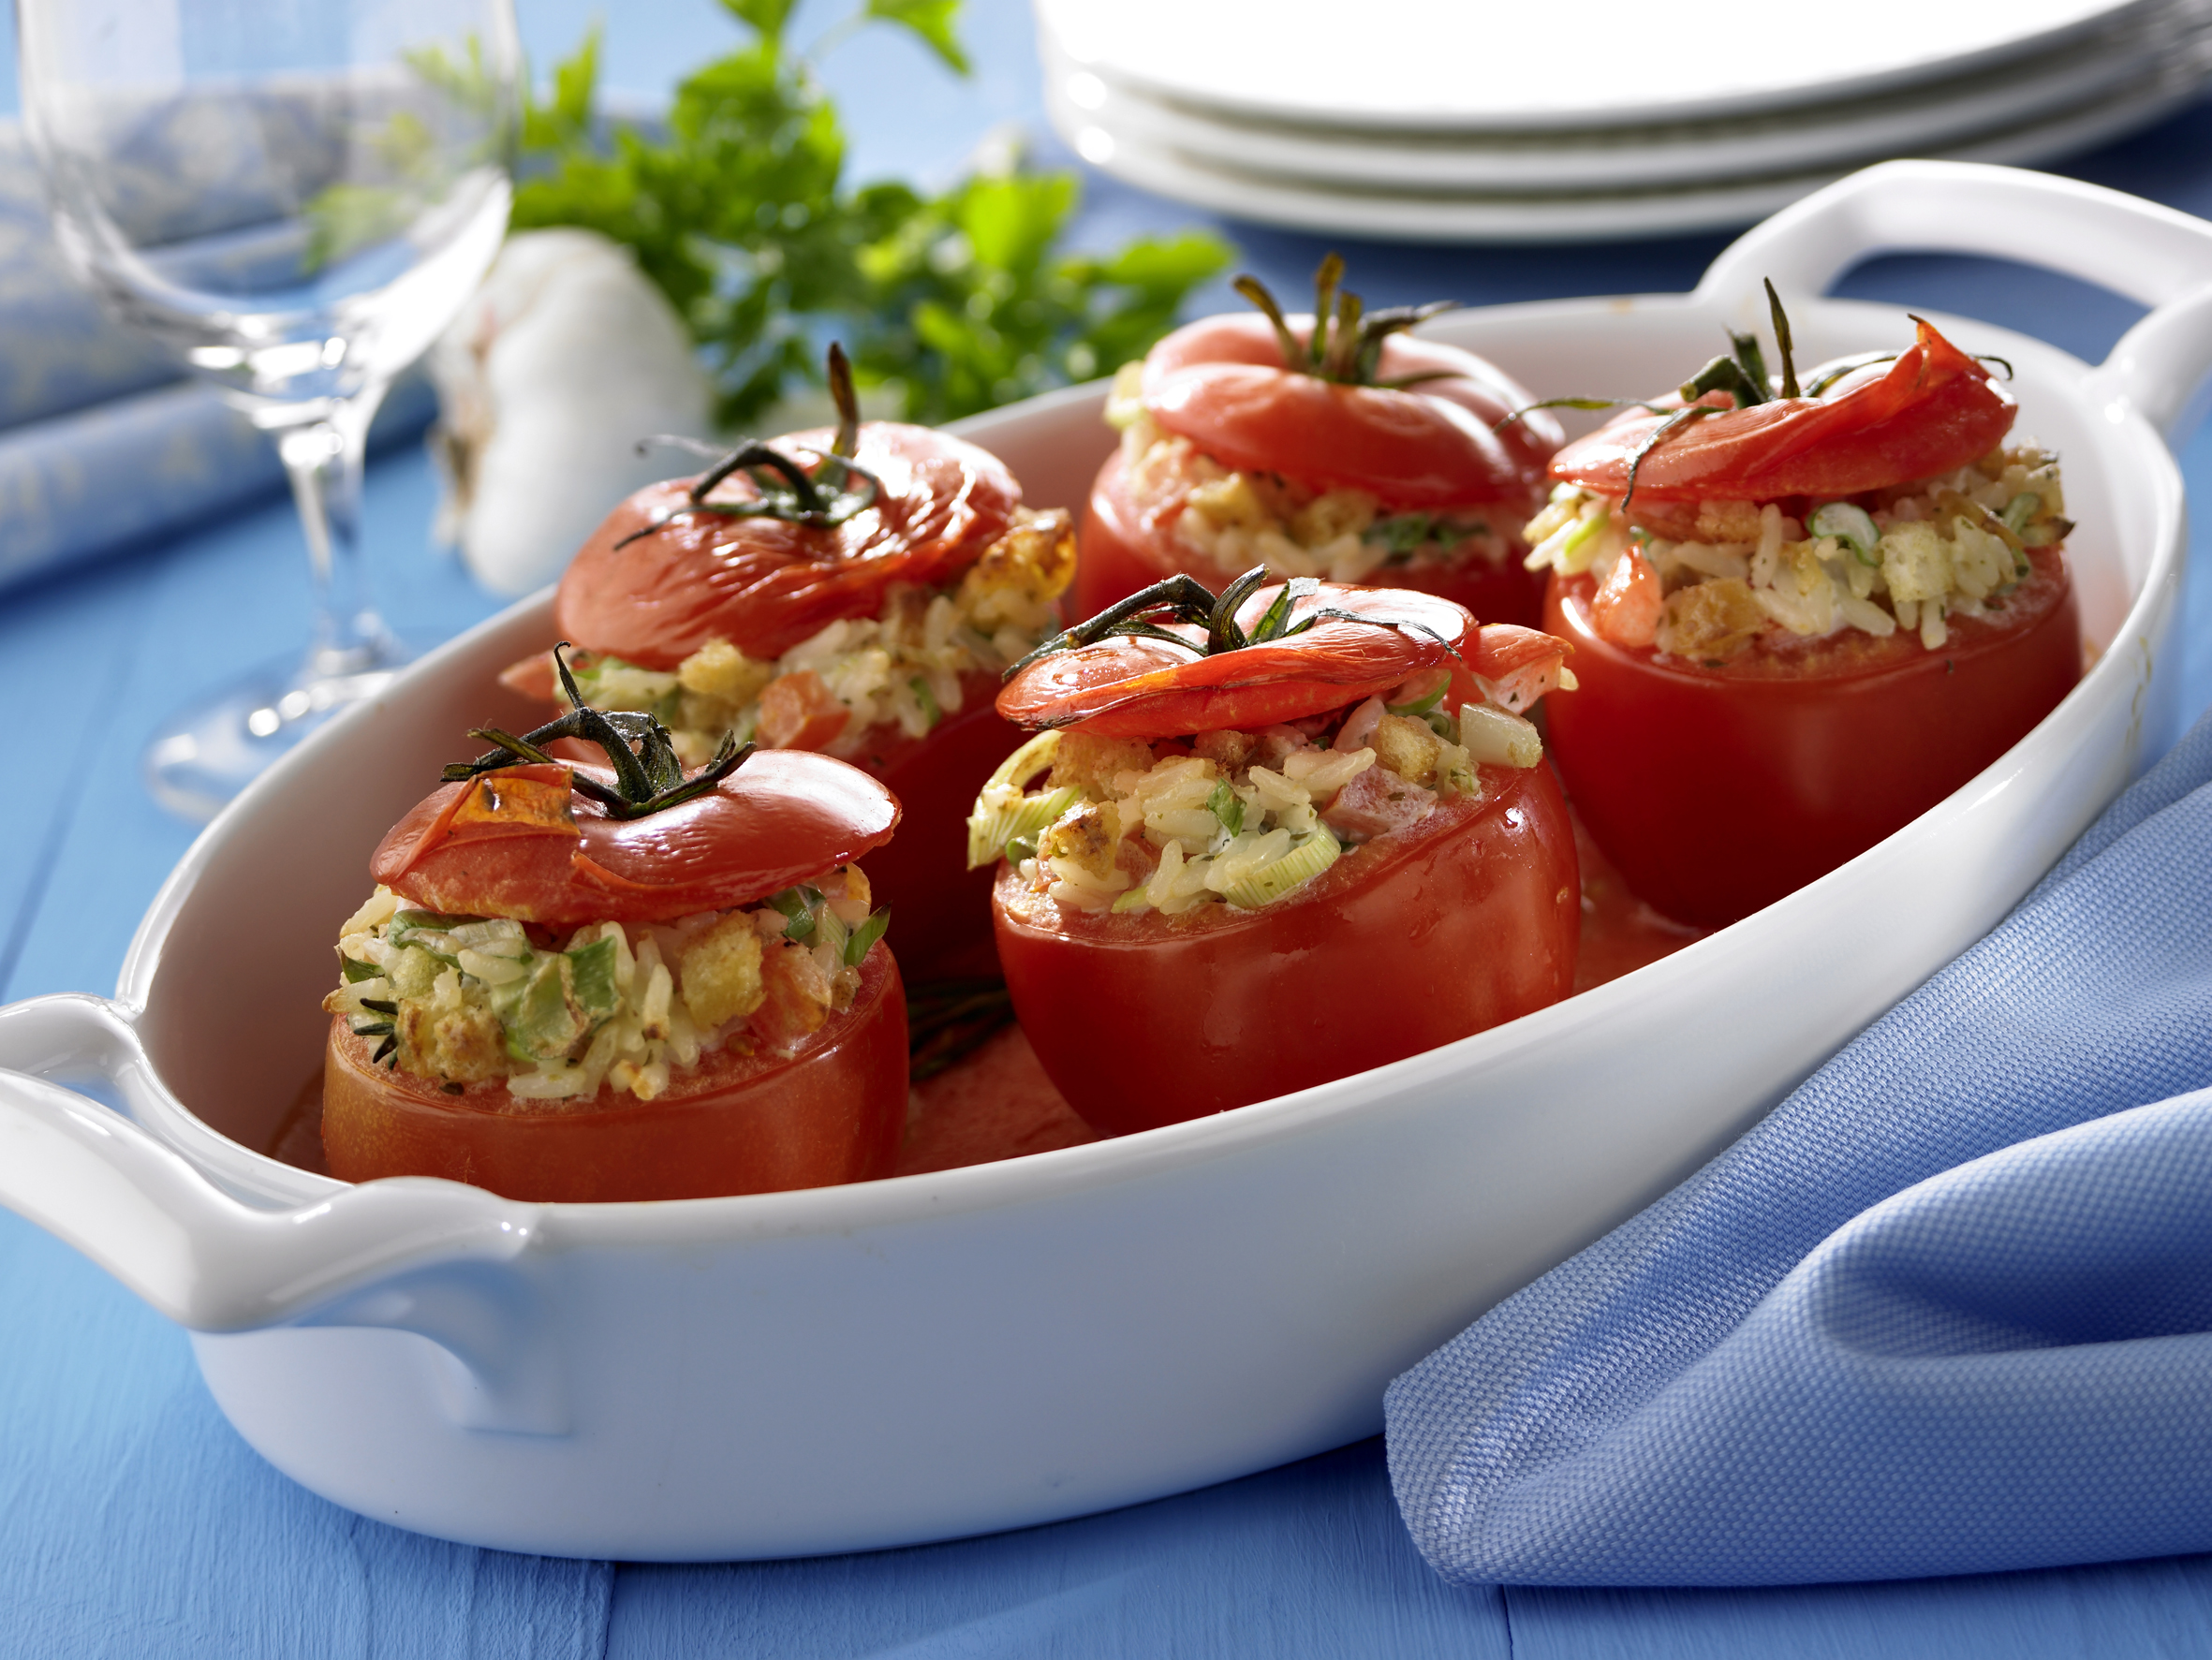 Gefüllte Tomaten — Rezepte Suchen